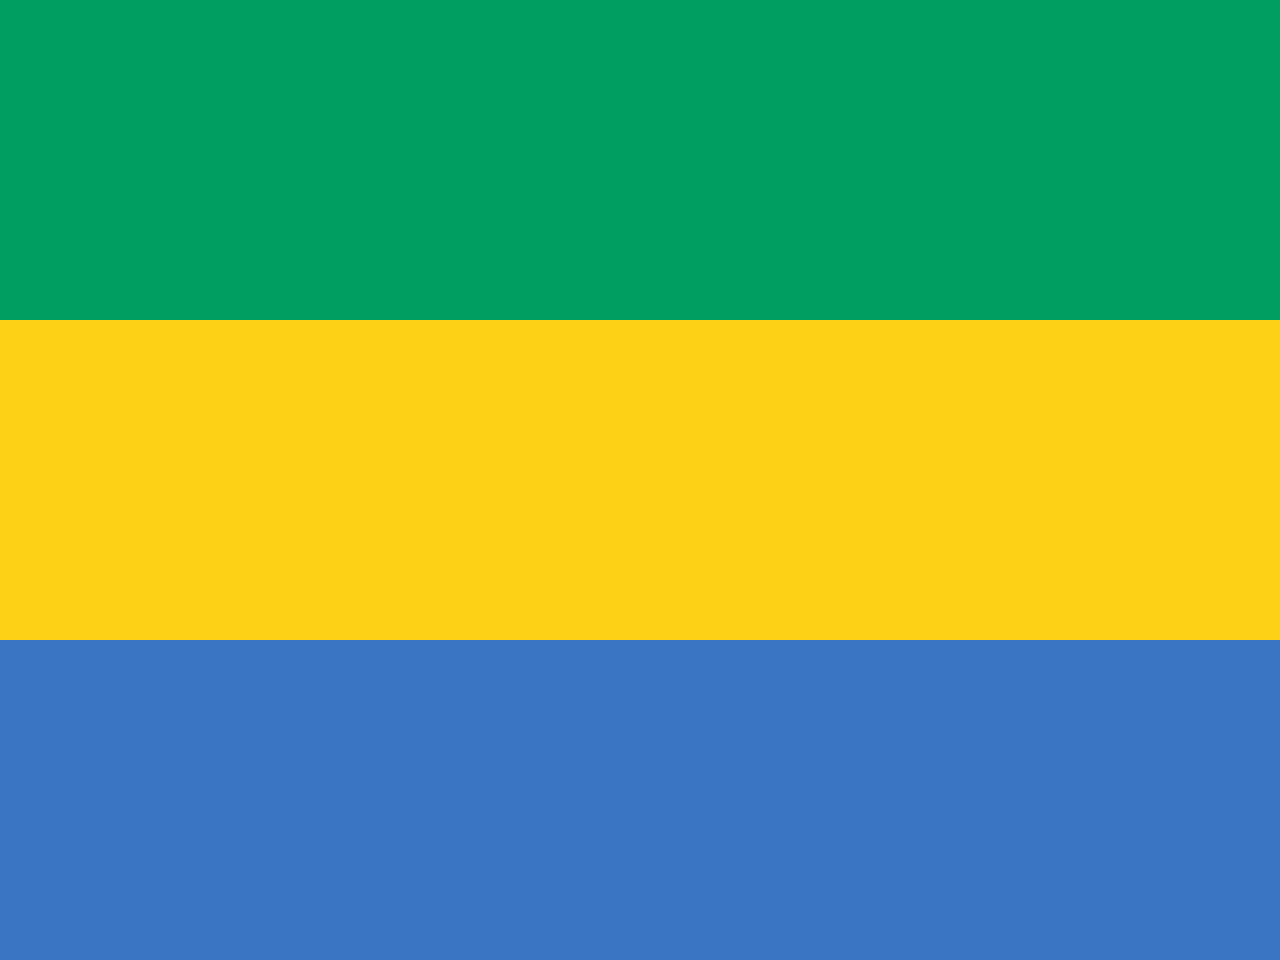 Drapeau de la Guinée-Bissau — Wikipédia